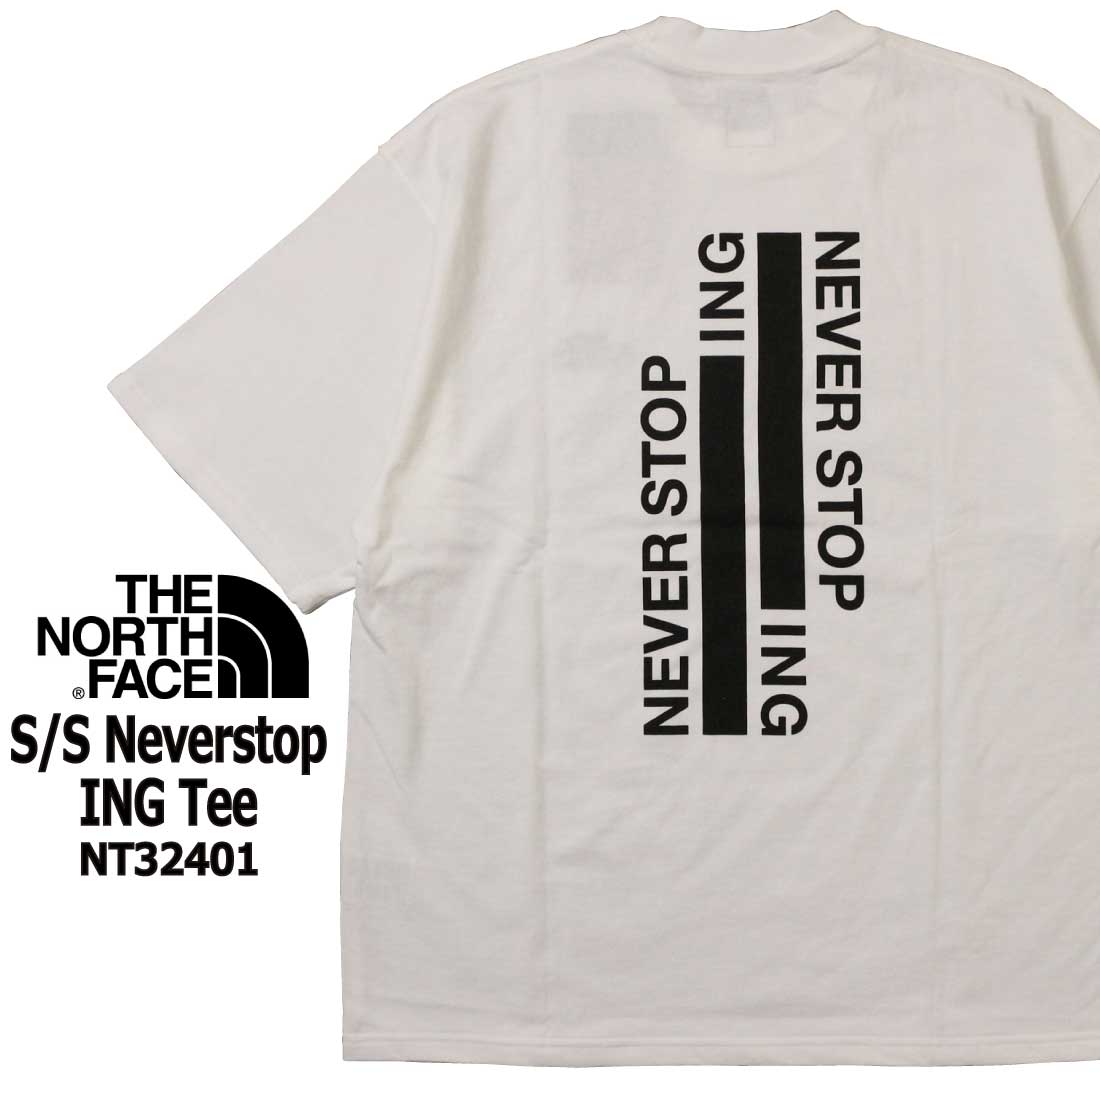 メール便 THE NORTH FACE ザ ノースフェイス 半袖 Tシャツ NT32401 ショート...